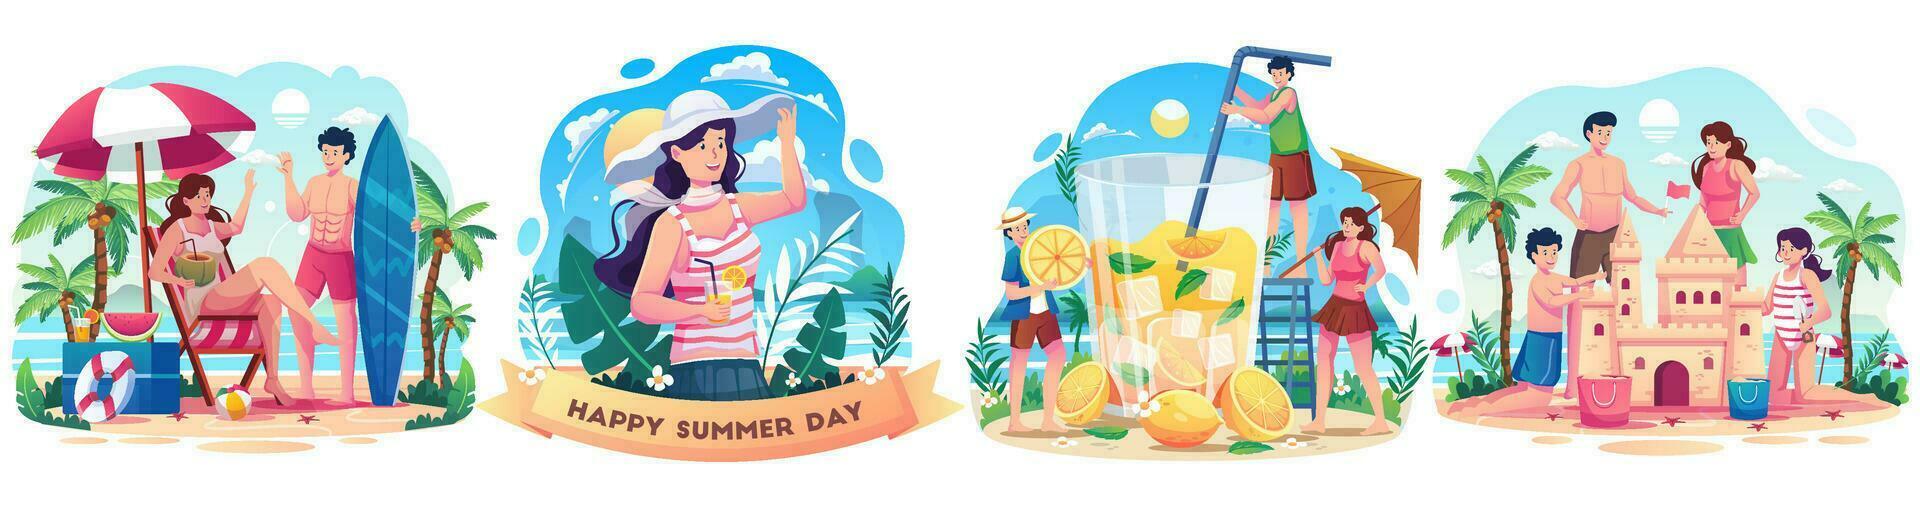 ensemble de concept d'été avec des personnes profitant de vacances pendant l'été. des gens heureux jouant sur la plage. illustration vectorielle de style plat vecteur